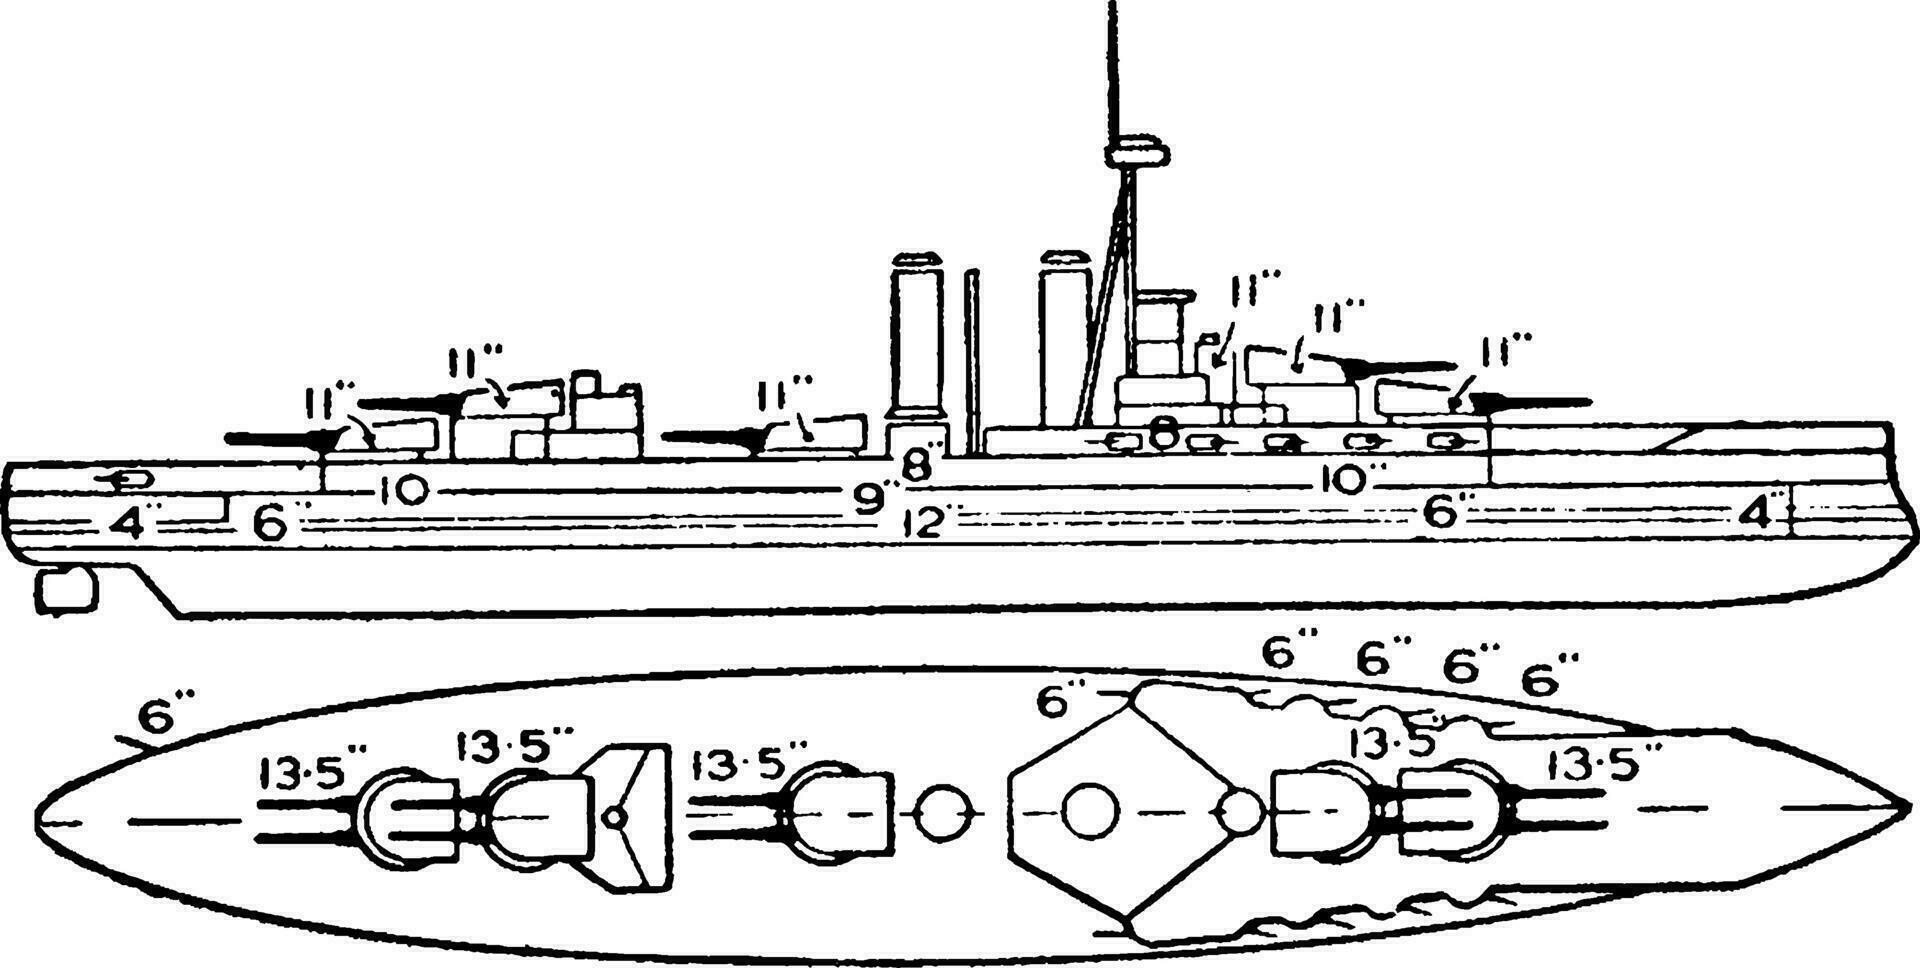 Iron Duke Class British Battleship, vintage illustration. vector